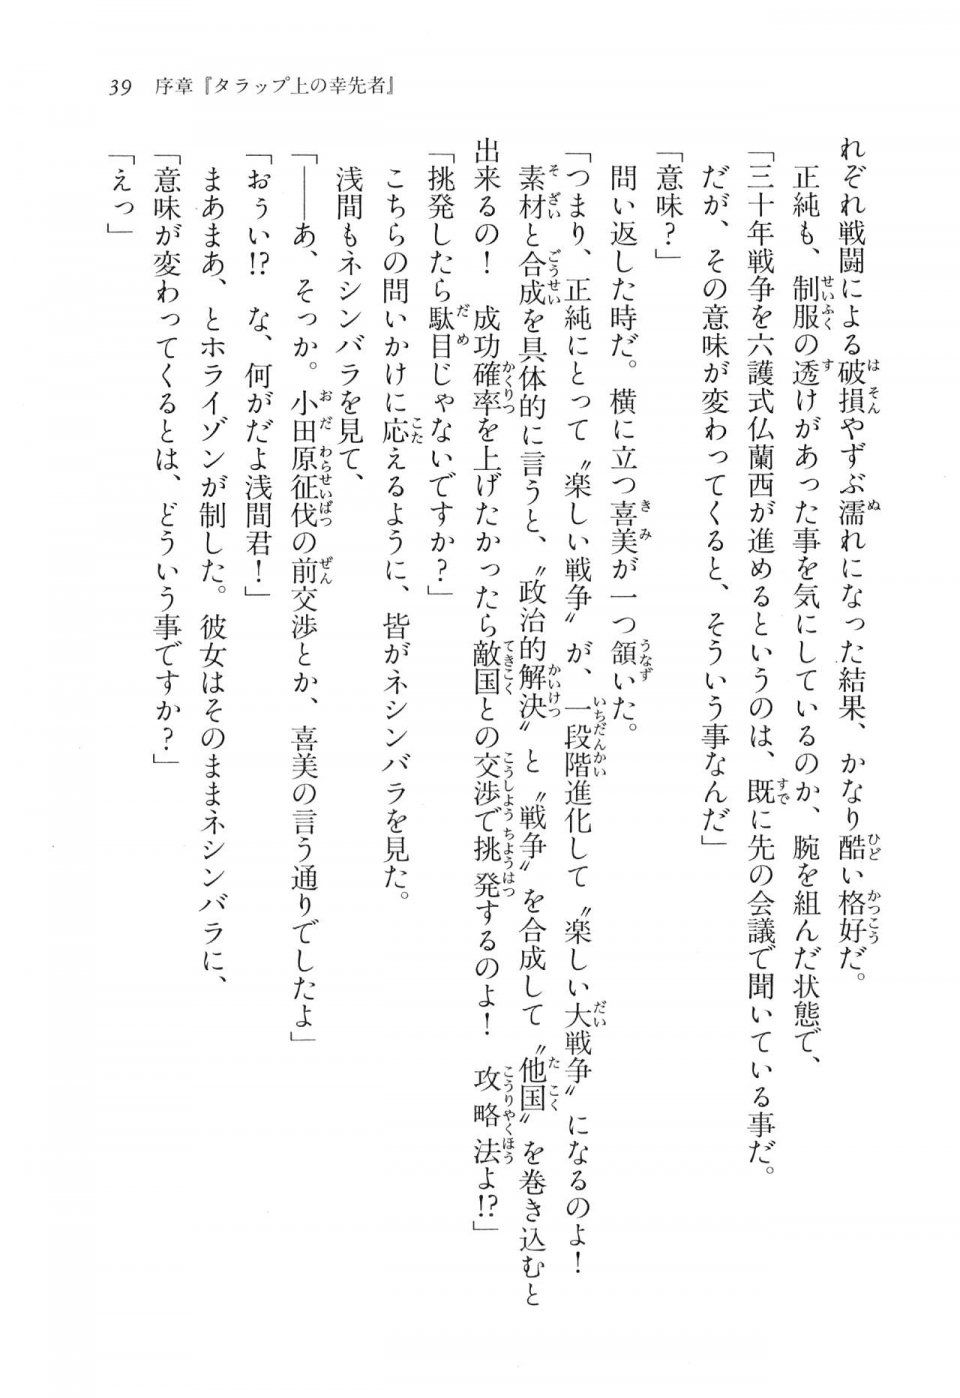 Kyoukai Senjou no Horizon LN Vol 16(7A) - Photo #39